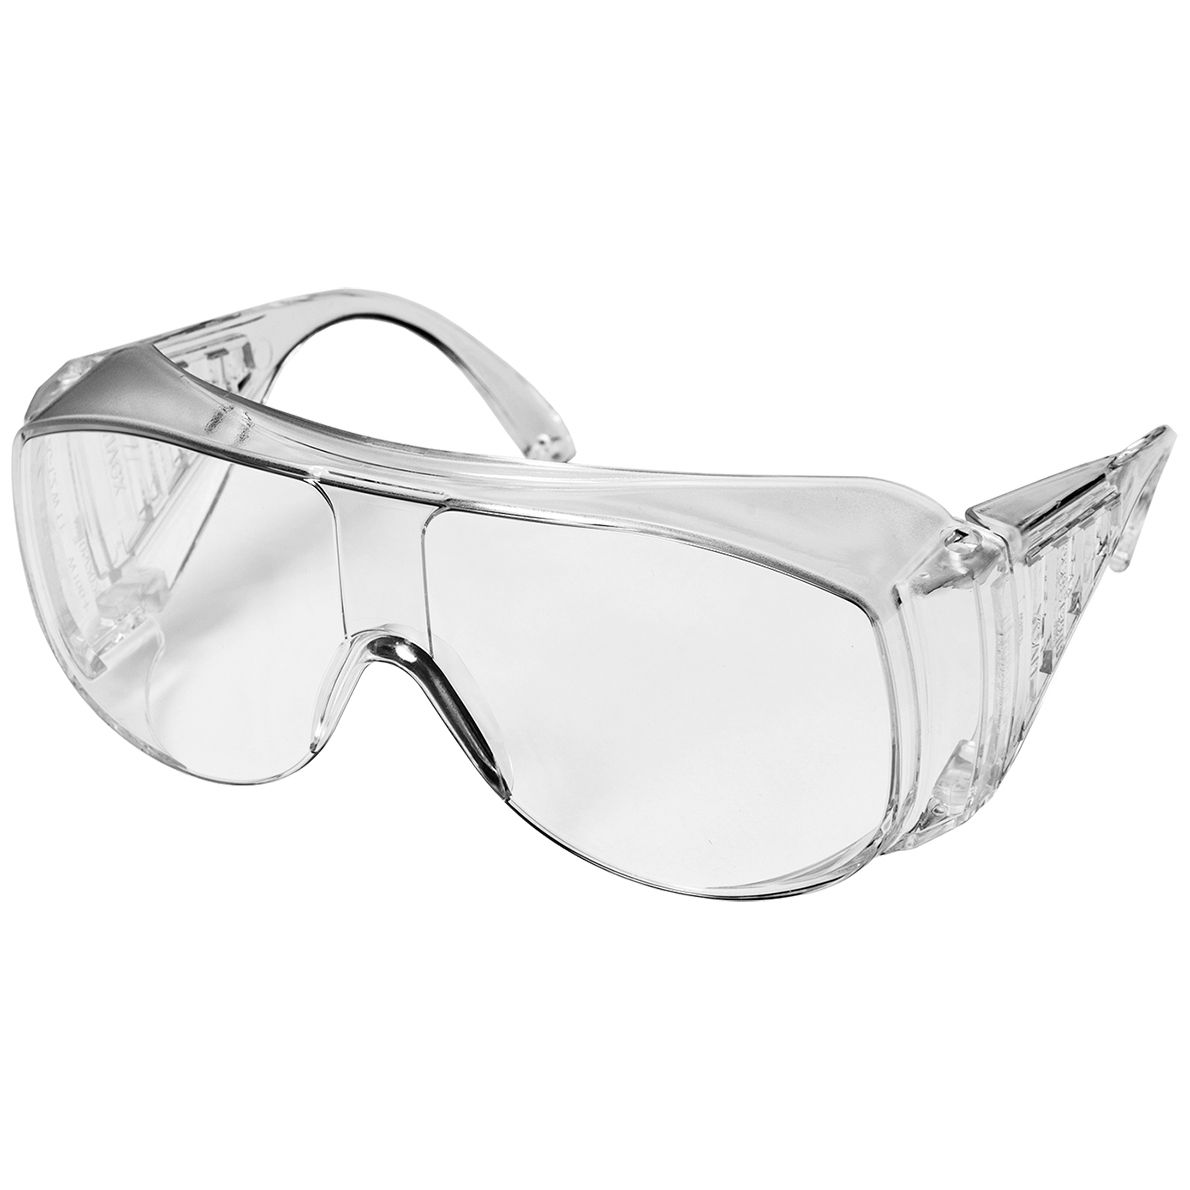 uvex 9161 Vollsicht-Schutzbrille - Variante ohne Beschichtung - EN 166/170 - Klar